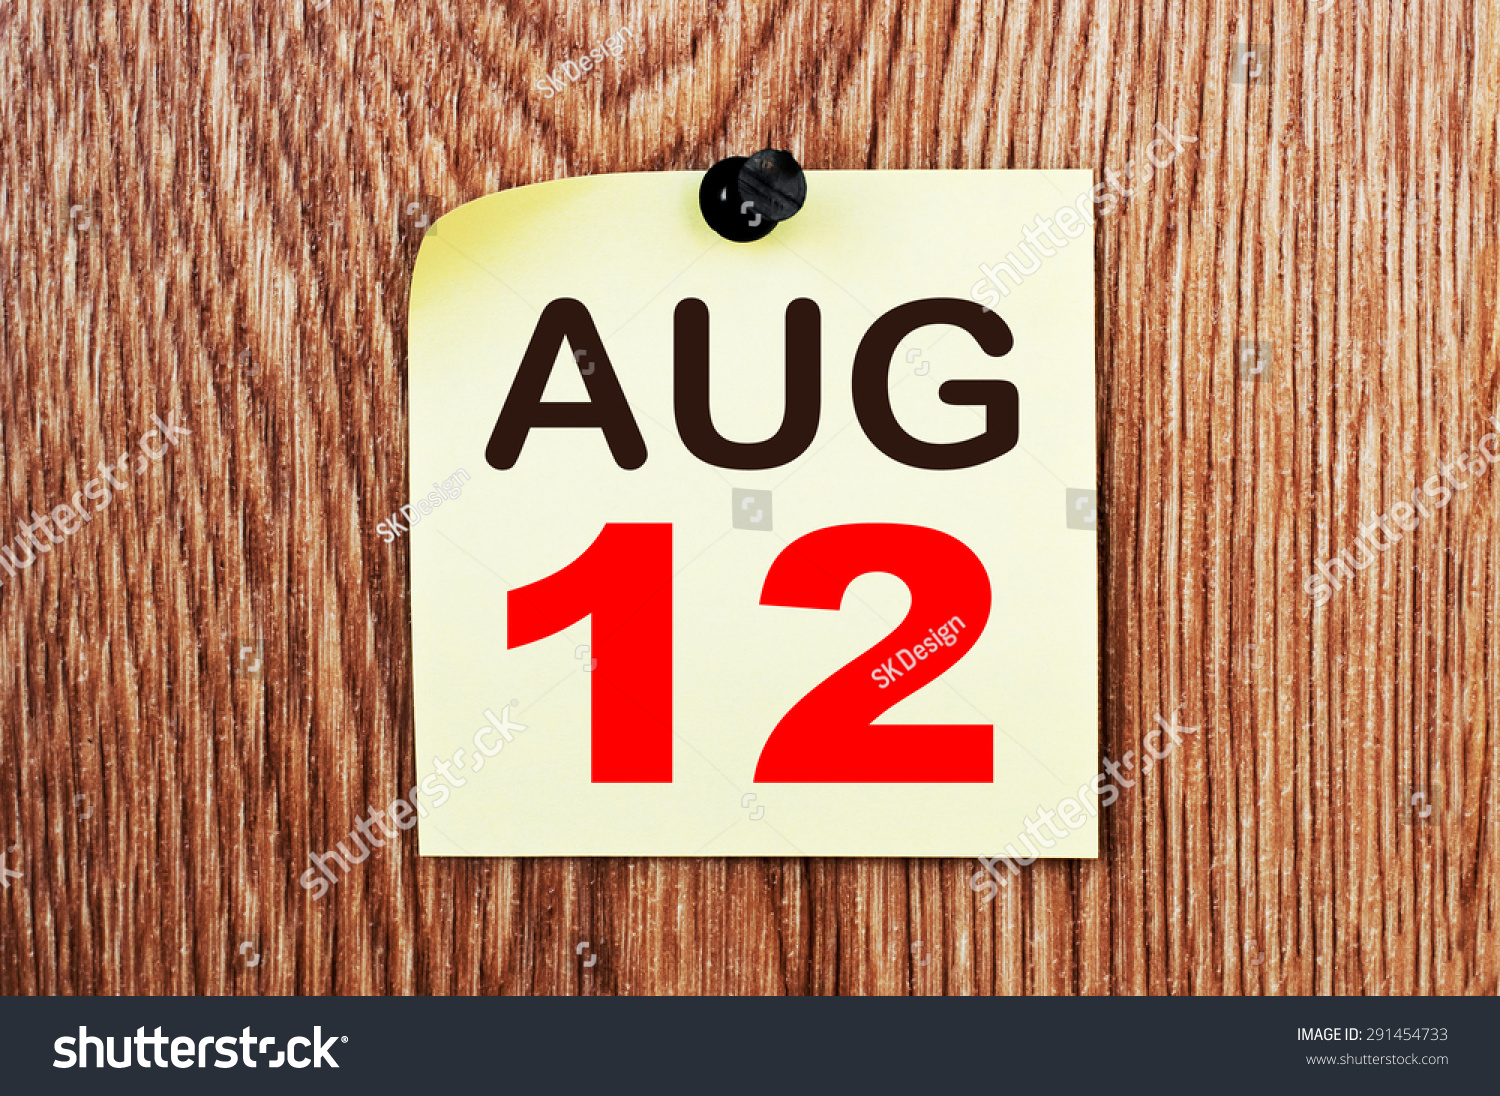 August 12 Calendar. Part Of A Set Stock Photo 291454733 : Shutterstock